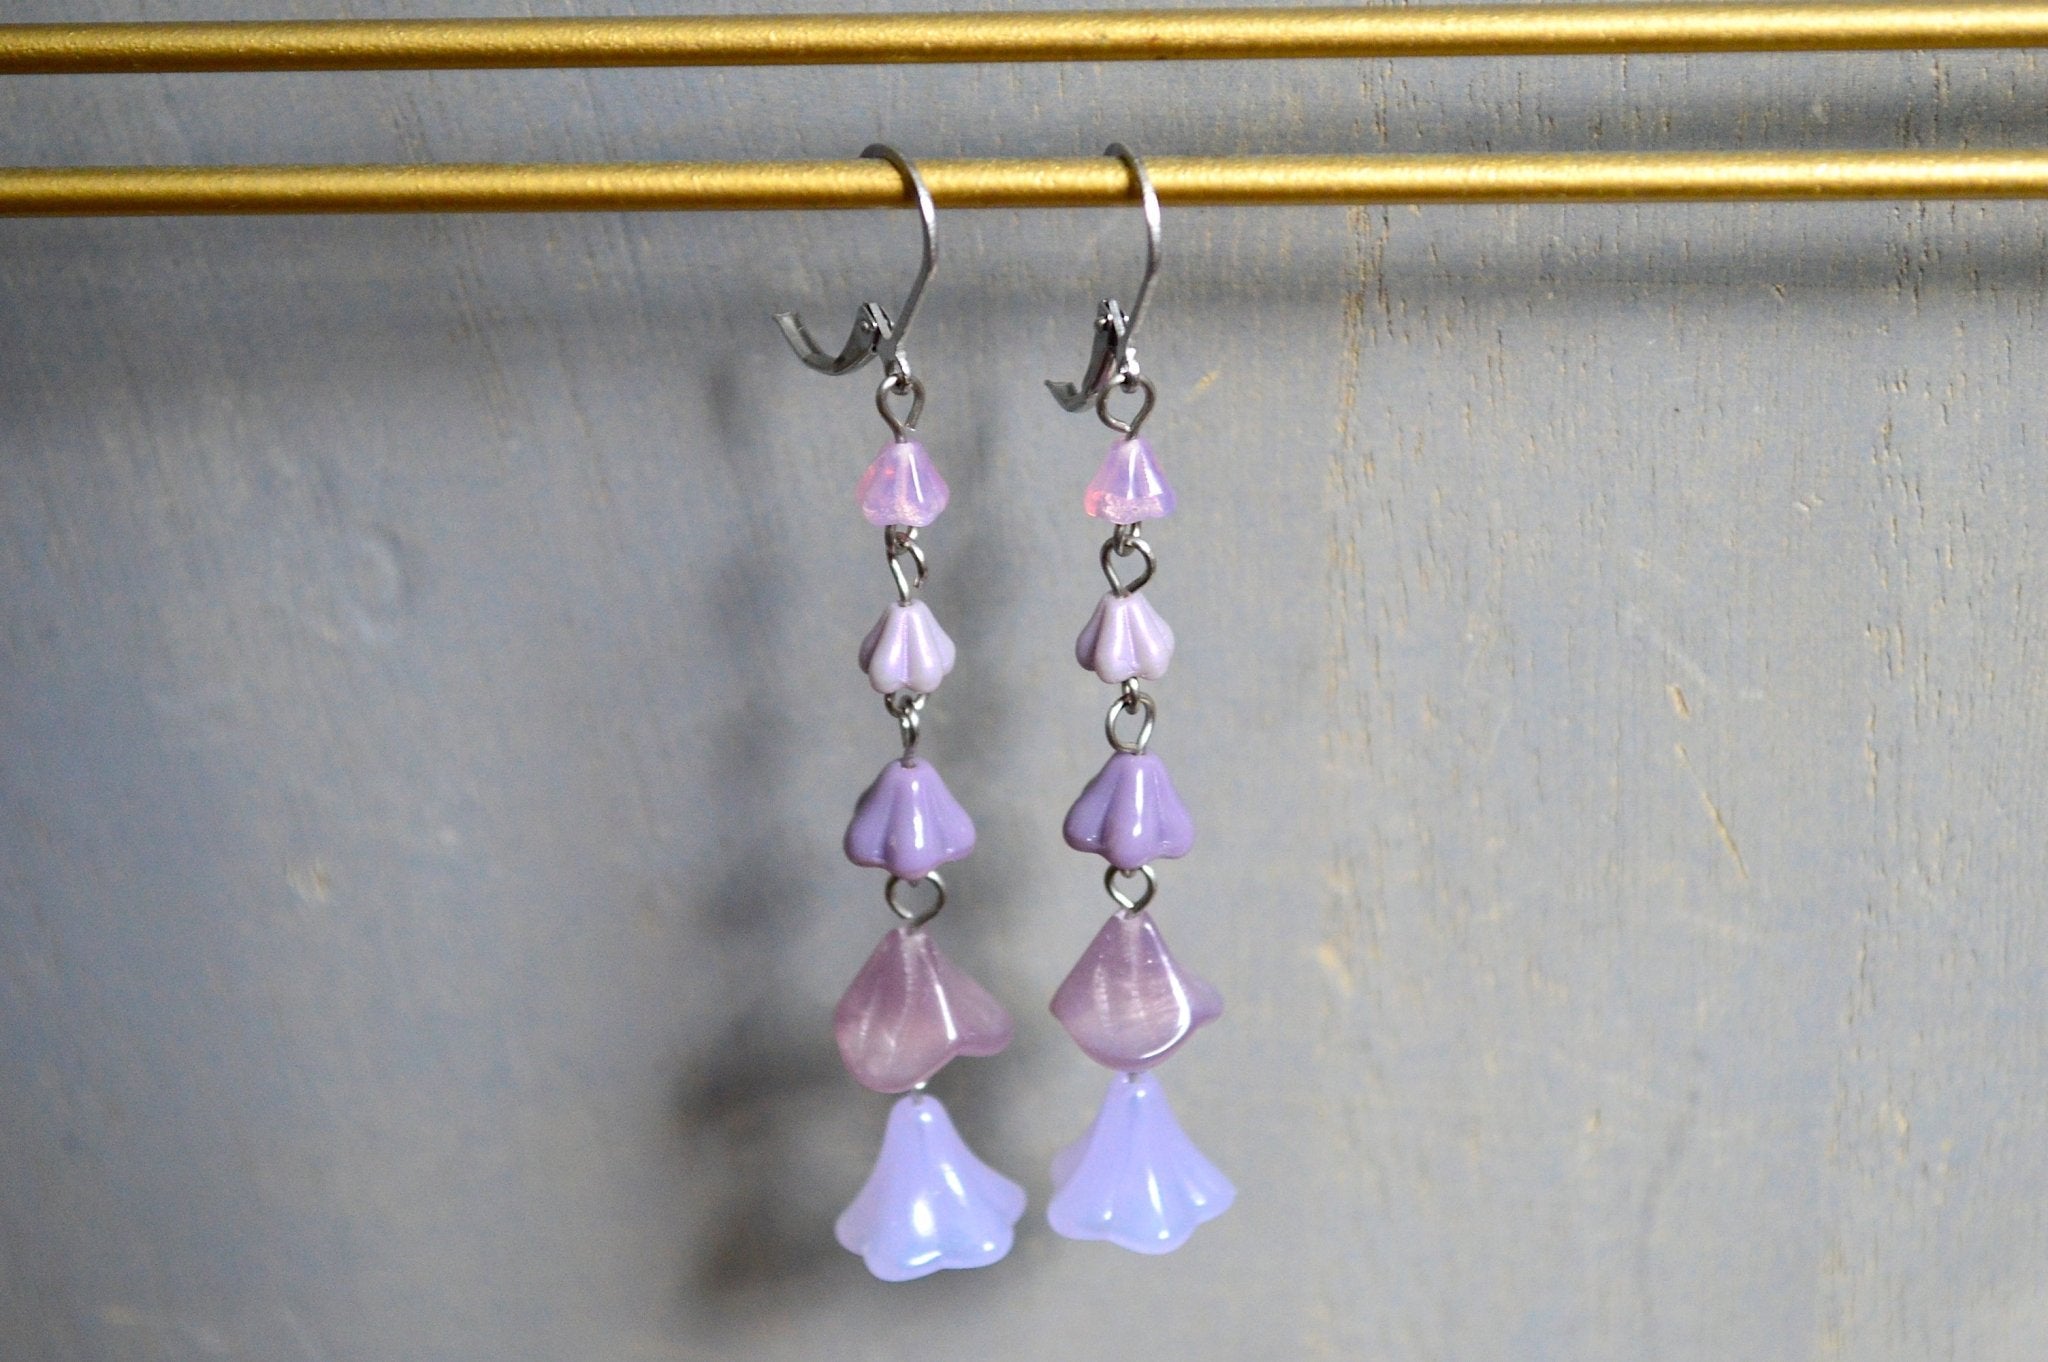 Lilac Drops Czech Glass Earrings - We Love Brass